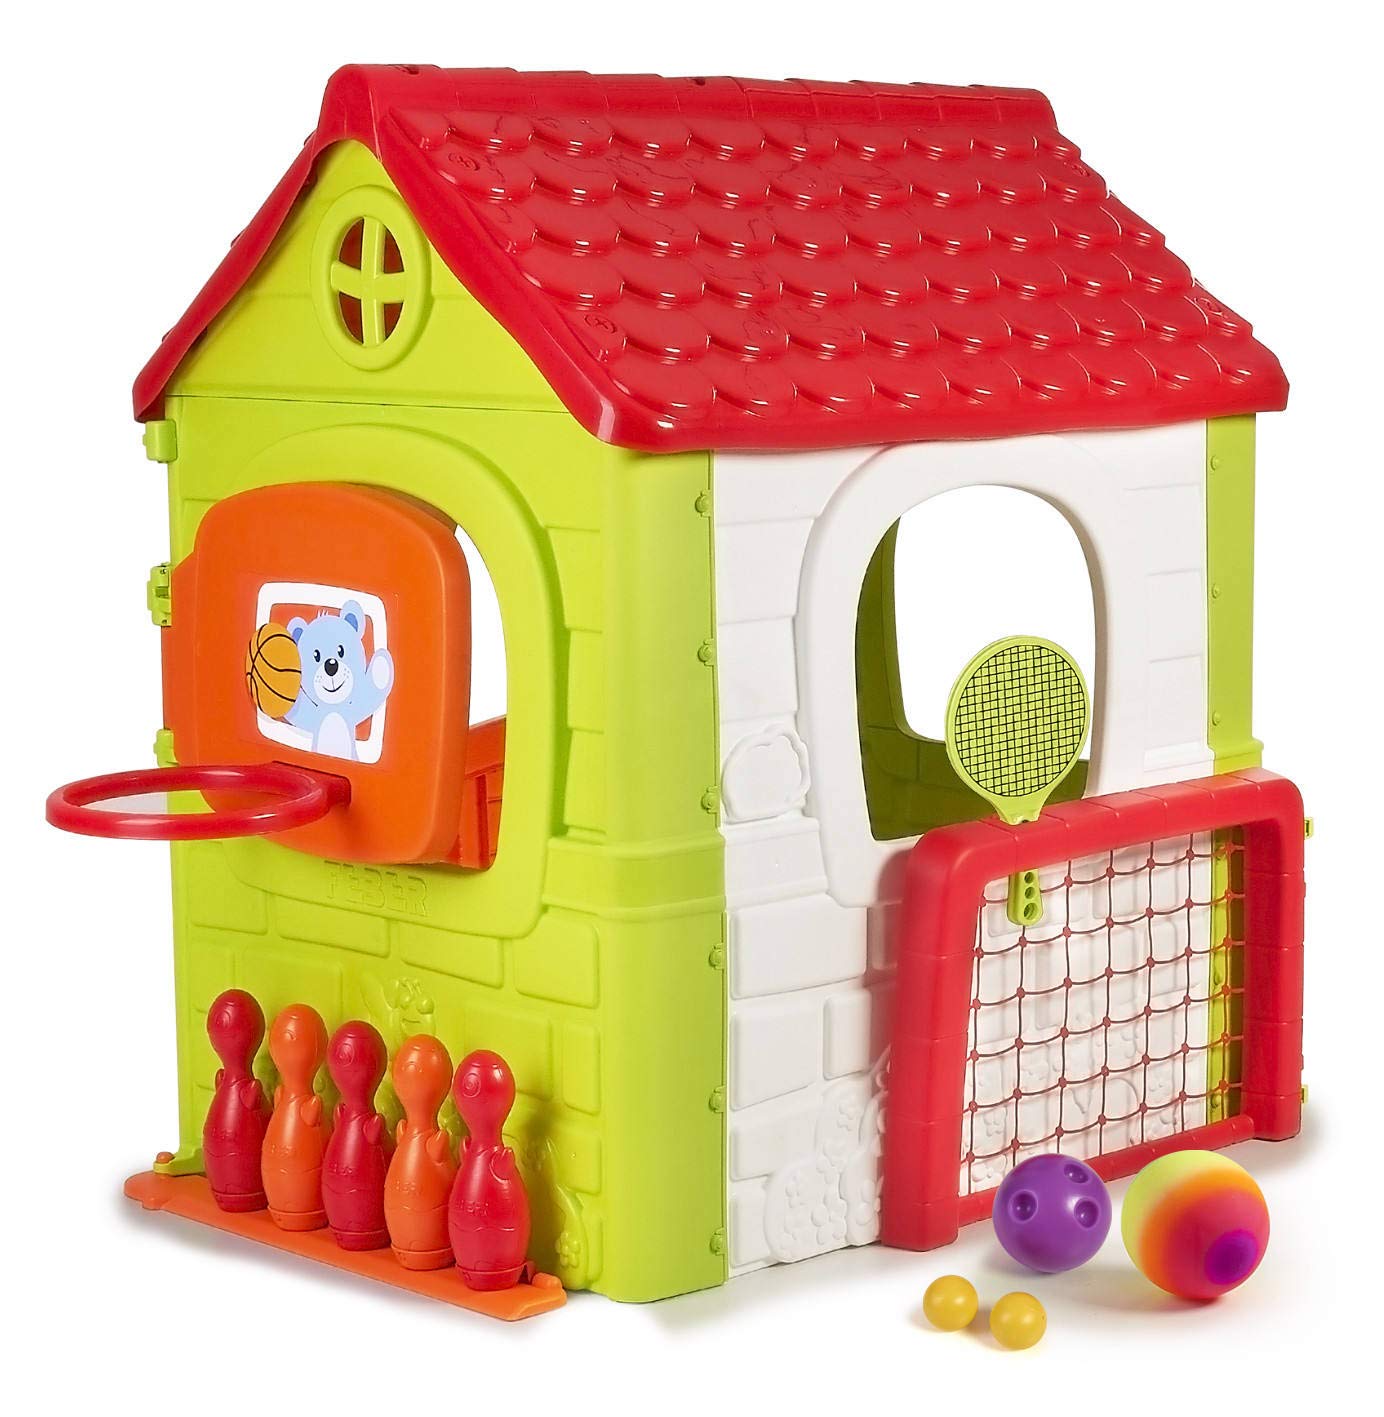 FEBER MULTI ACTIVITY HOUSE - Toys Center